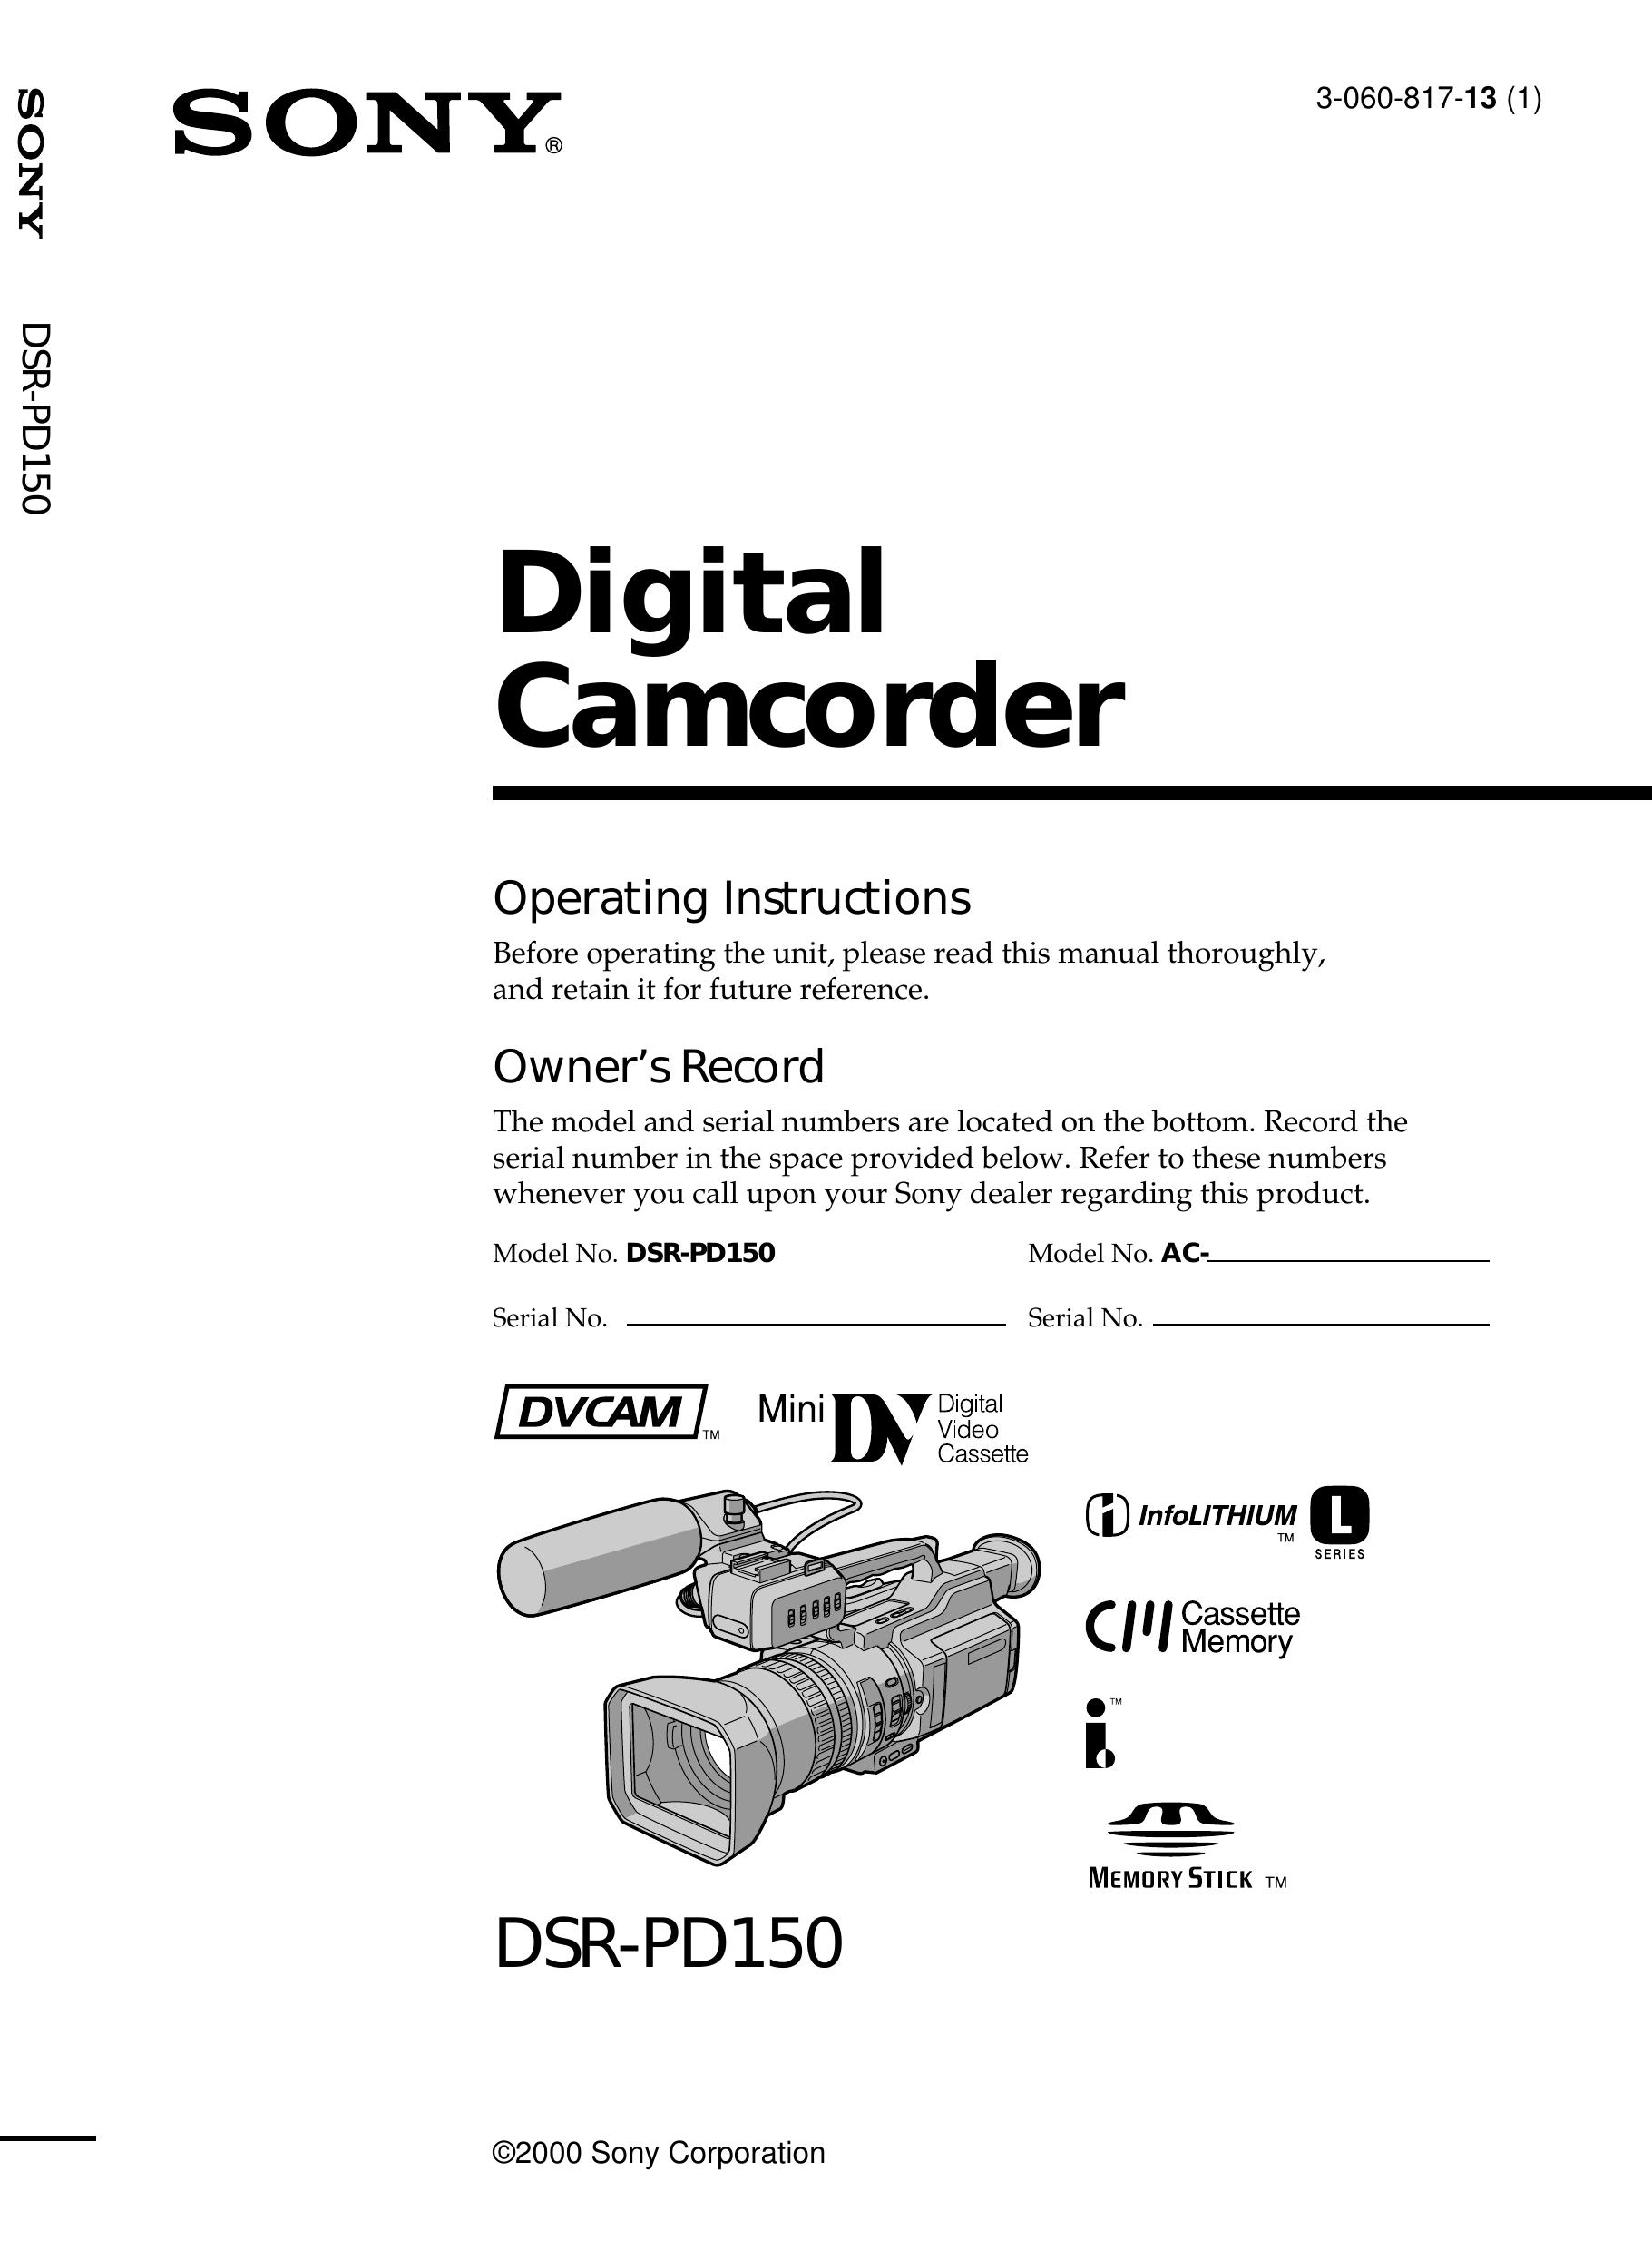 Light & Motion DSR-PD150 Camcorder User Manual